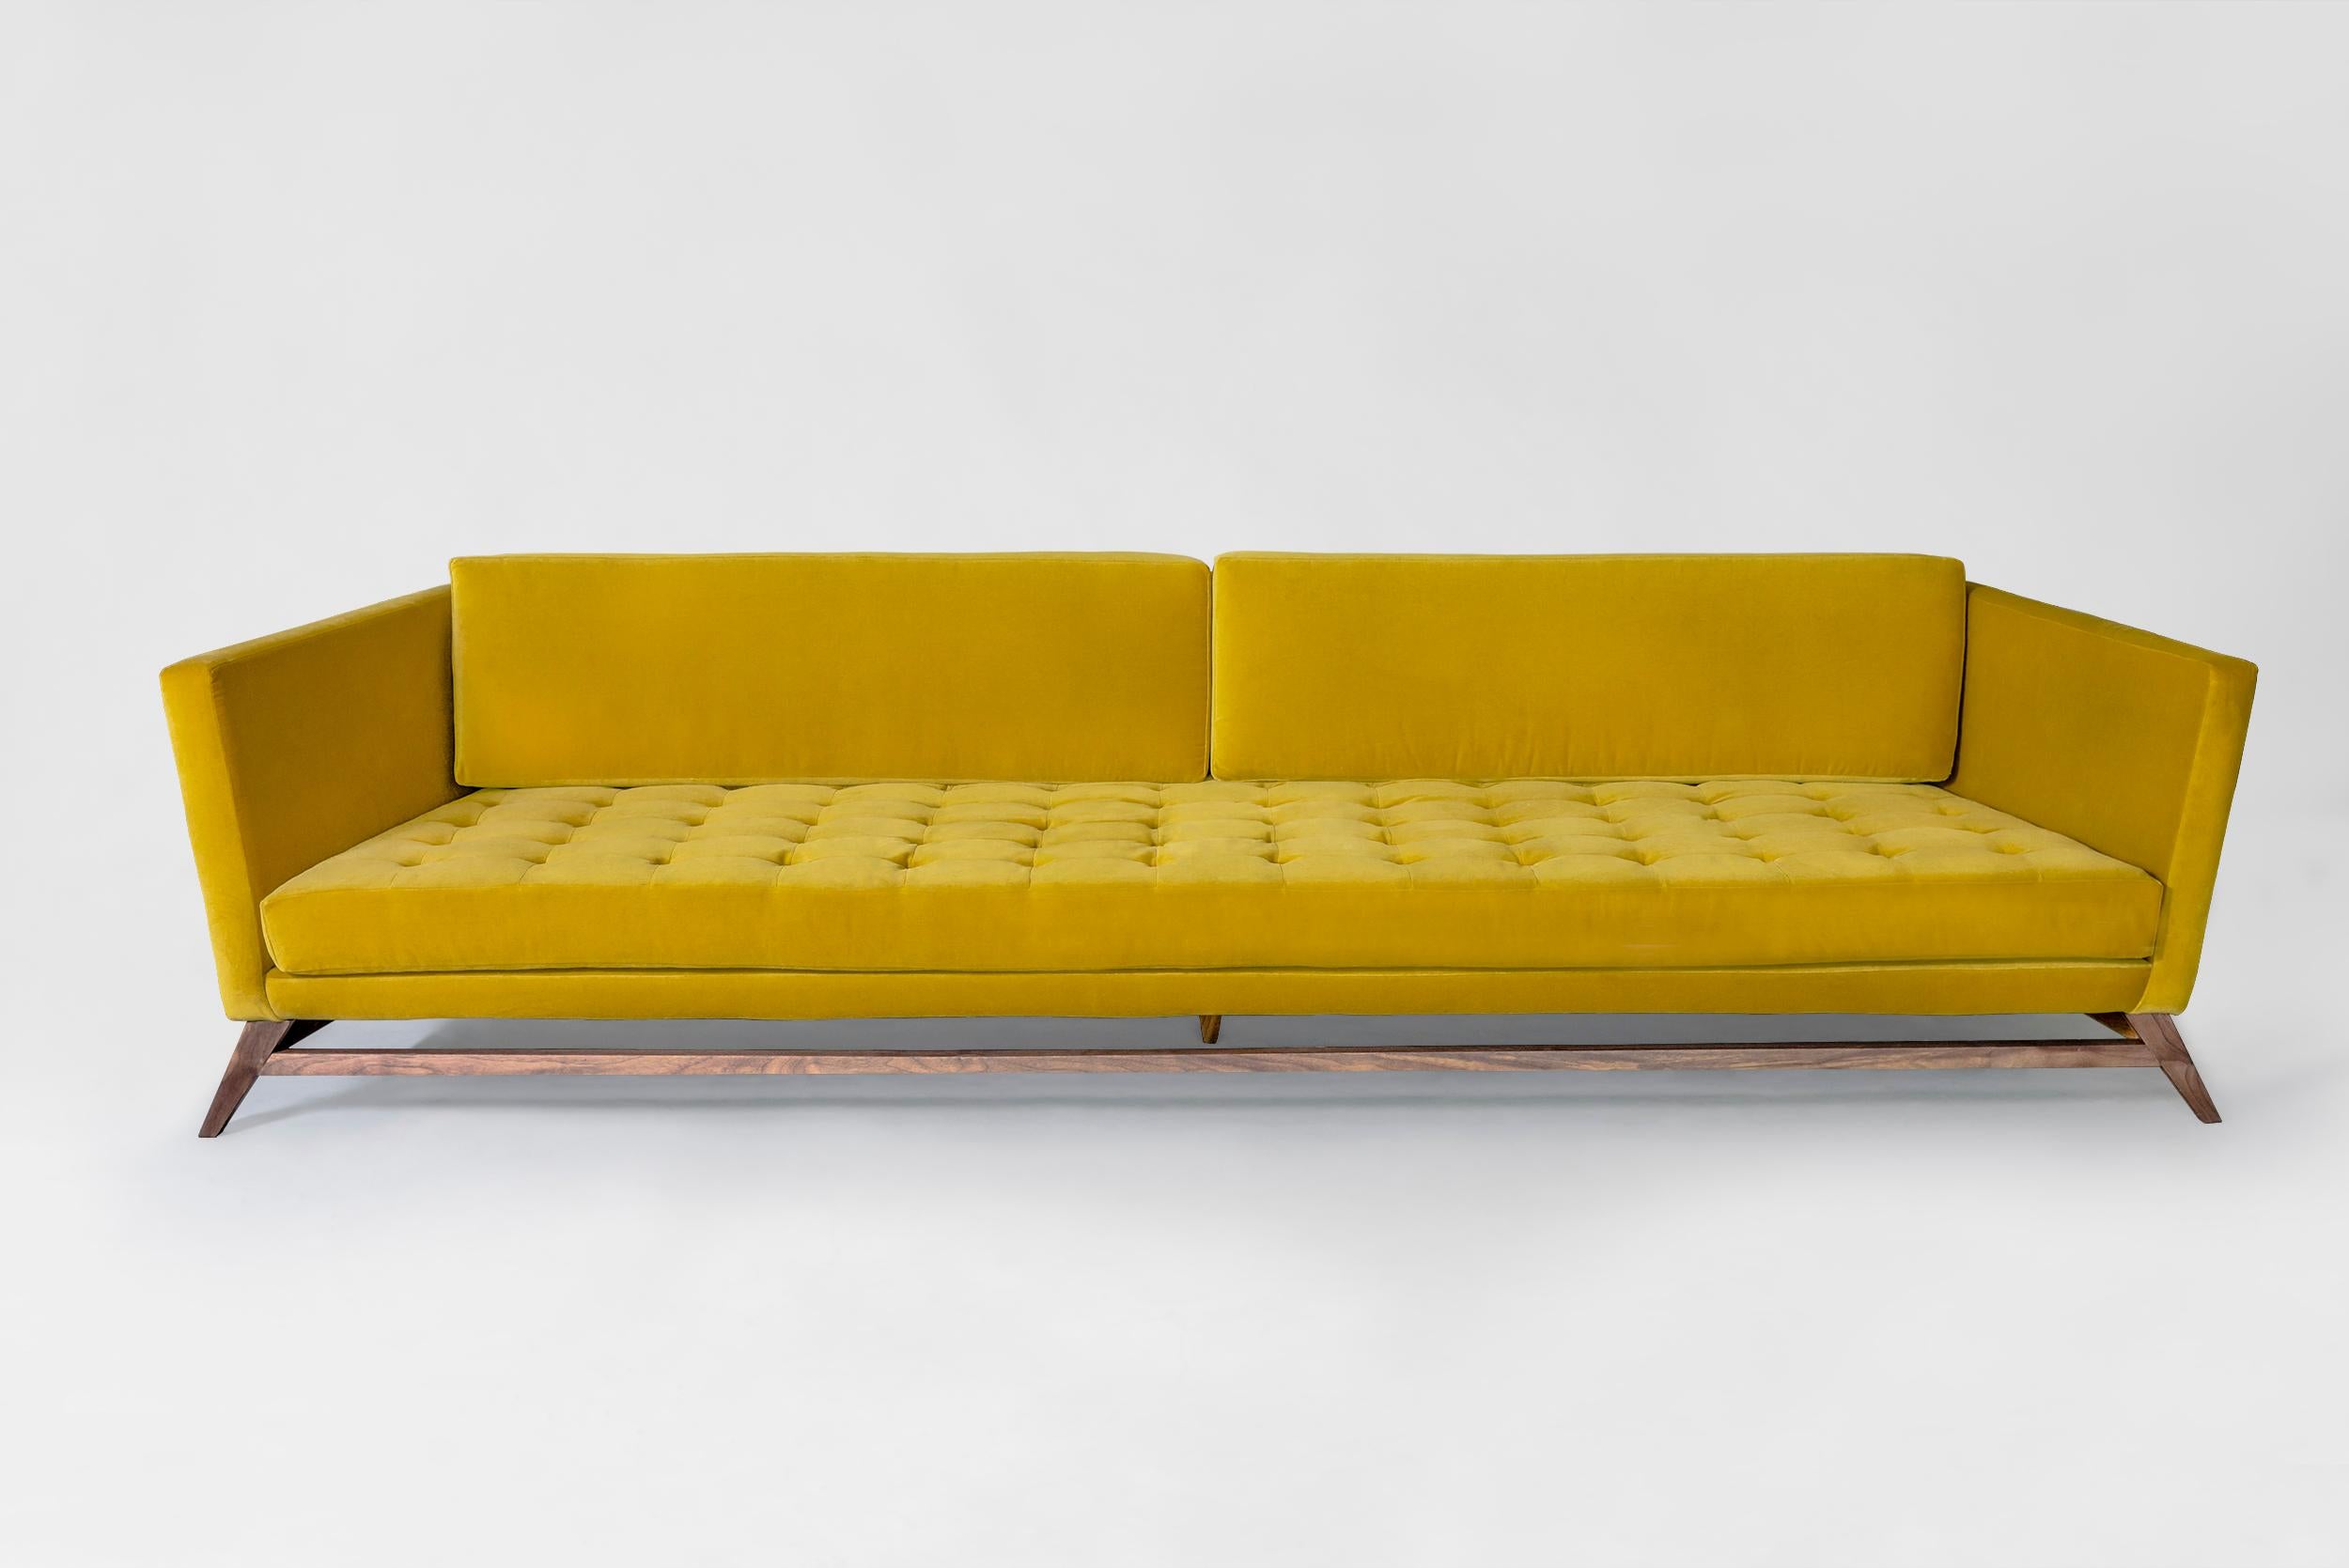 Canapé Yellow Eclipse d'Atra Design
Dimensions : D 220 x L 108,8 x H 79 cm
Matériaux : tissu, bois de noyer
Disponible dans d'autres couleurs.

Atra Design
Nous sommes Atra, une marque de meubles produite par Atra form A, un site de production